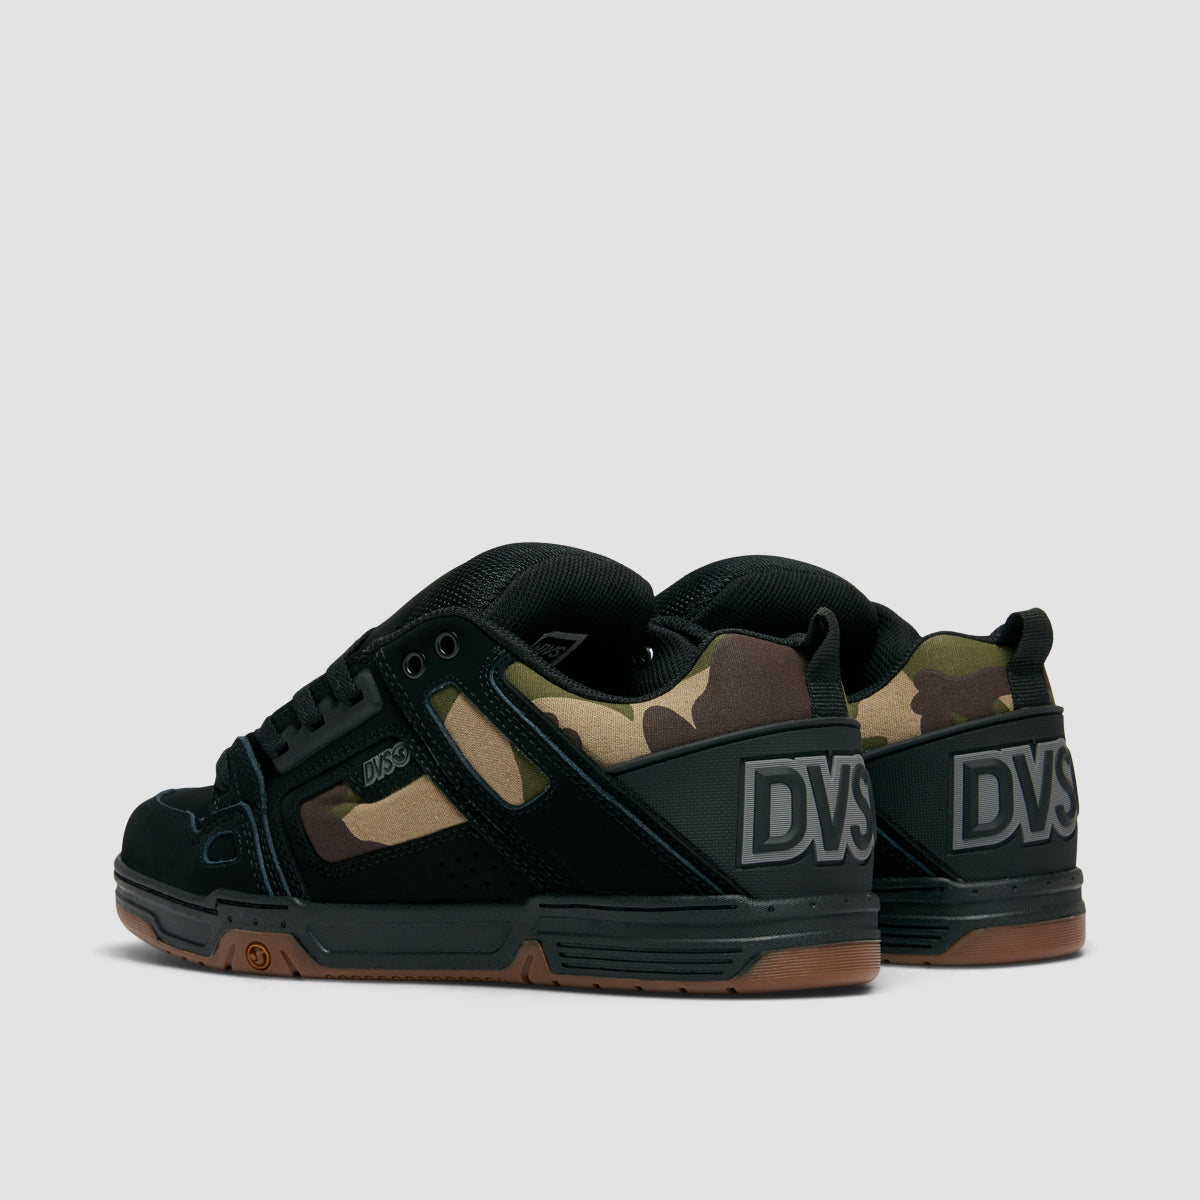 DVS Comanche Shoes - Black/Camo Nubuck